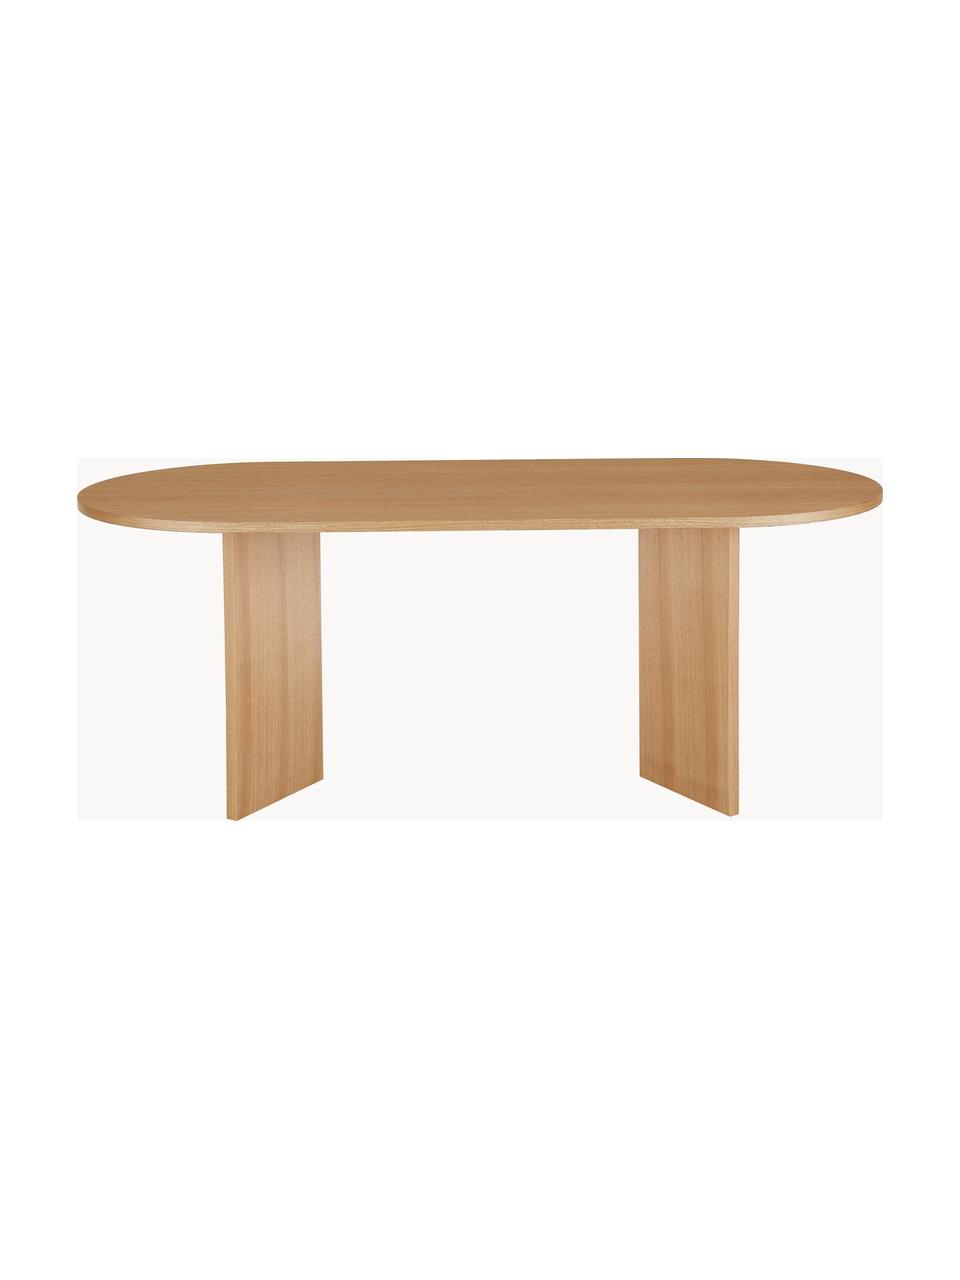 Oválný dřevěný jídelní stůl Toni, 200 x 90 cm, Lakovaná dřevovláknitá deska střední hustoty (MDF) s dubovou dýhou

Tento produkt je vyroben z udržitelných zdrojů dřeva s certifikací FSC®., Jasanové dřevo, Š 200 cm, H 90 cm